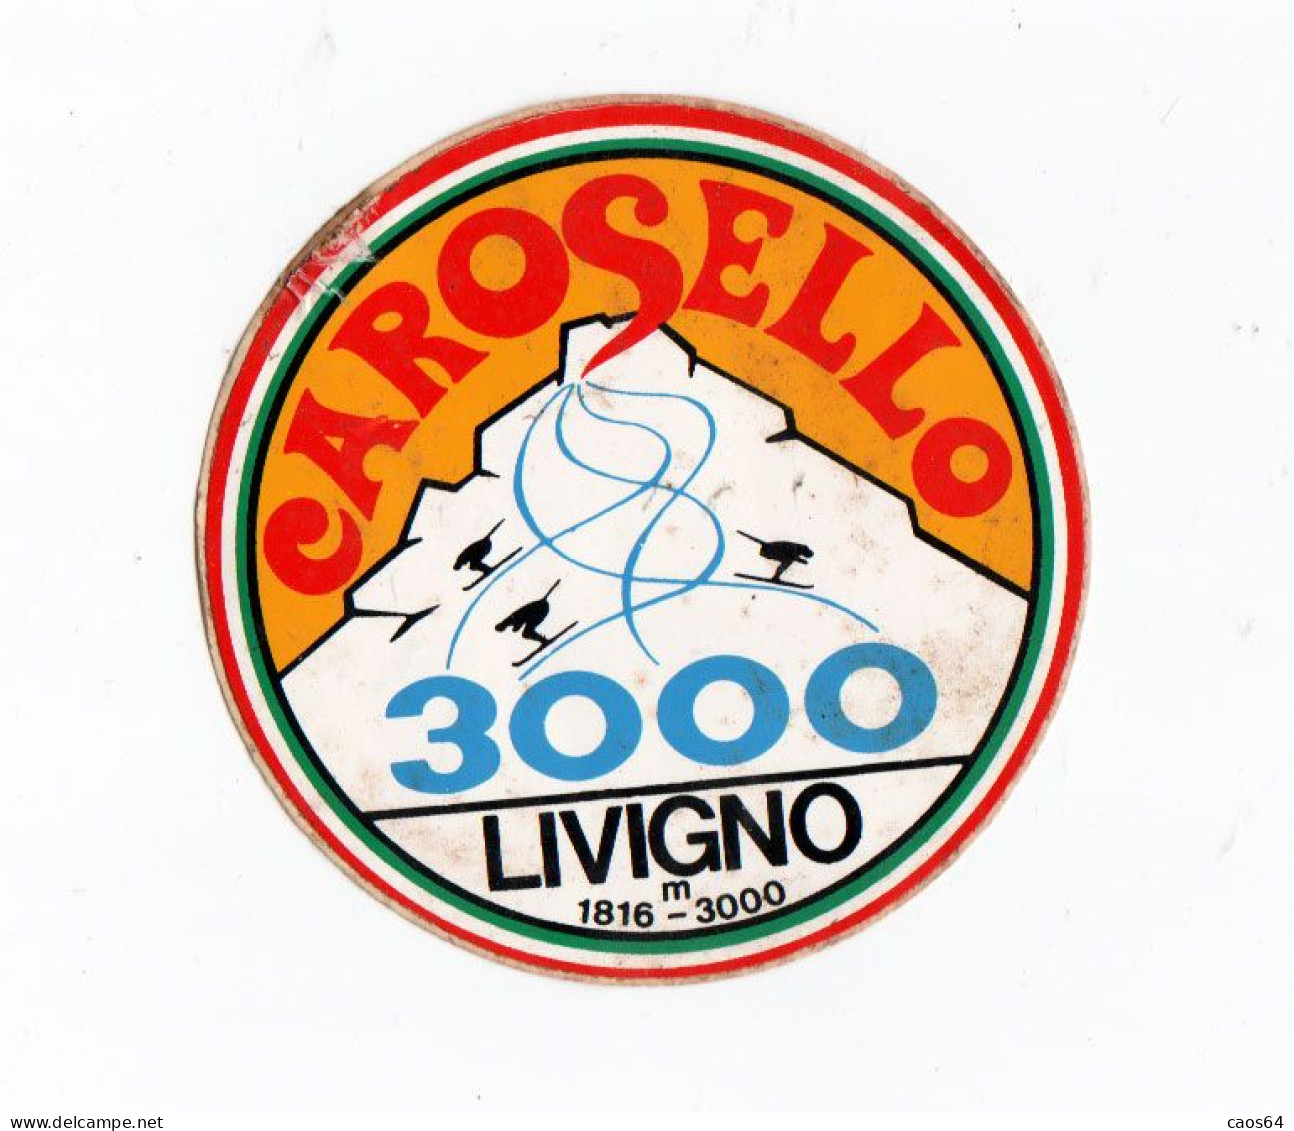 Carosello Livigno 3000  Ø  Cm 9  ADESIVO STICKER  NEW ORIGINAL - Stickers